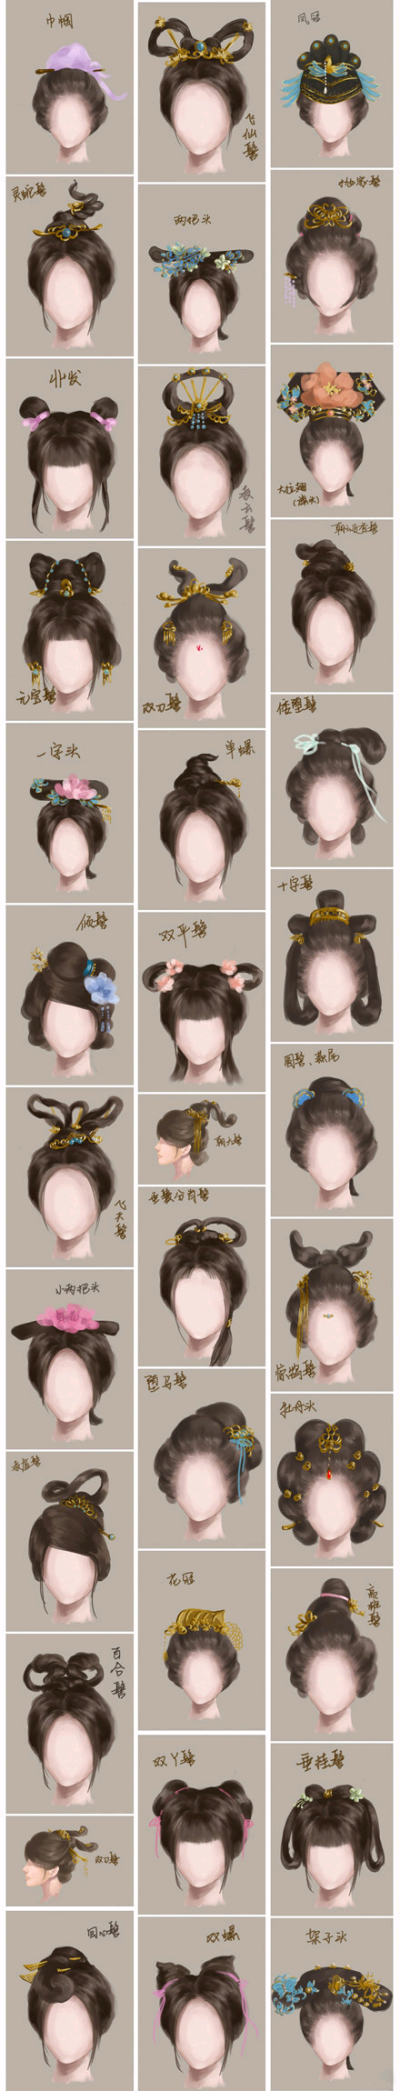 中国古代女子发型大全